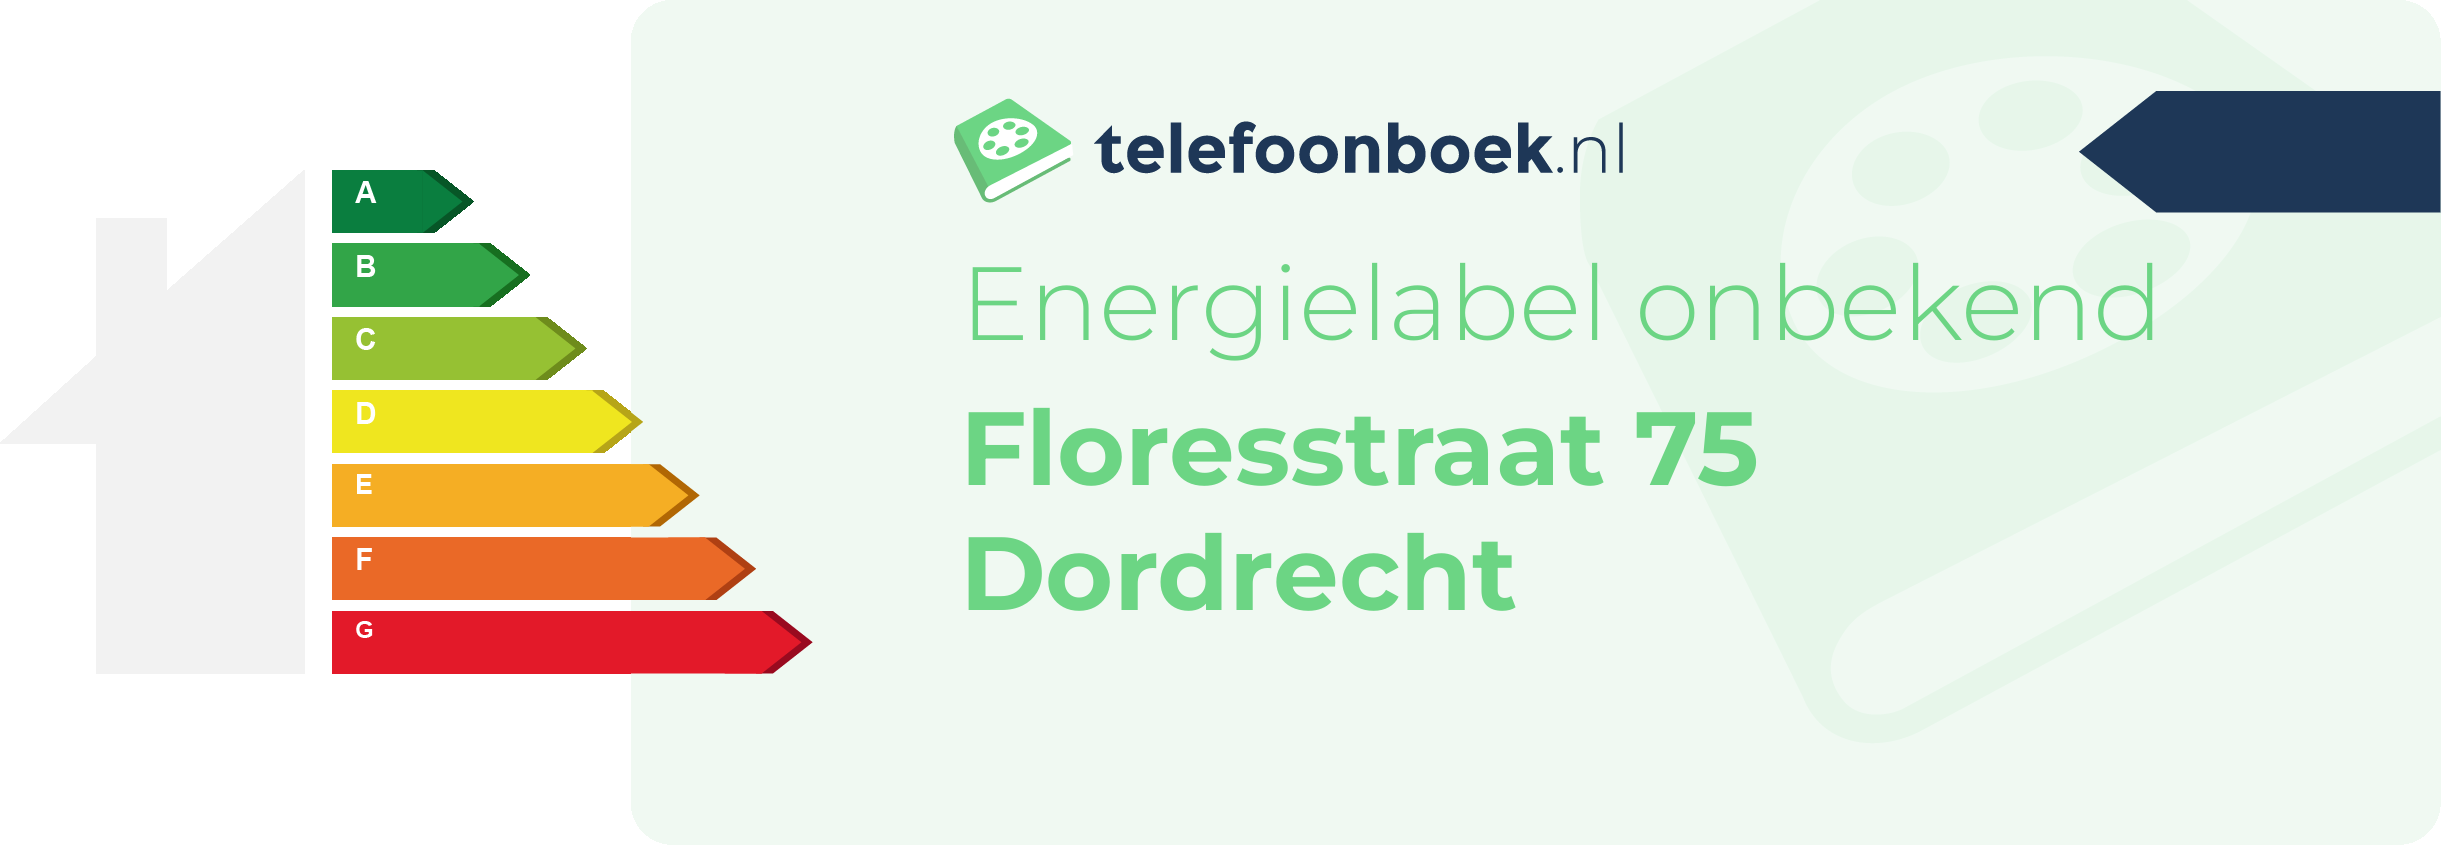 Energielabel Floresstraat 75 Dordrecht